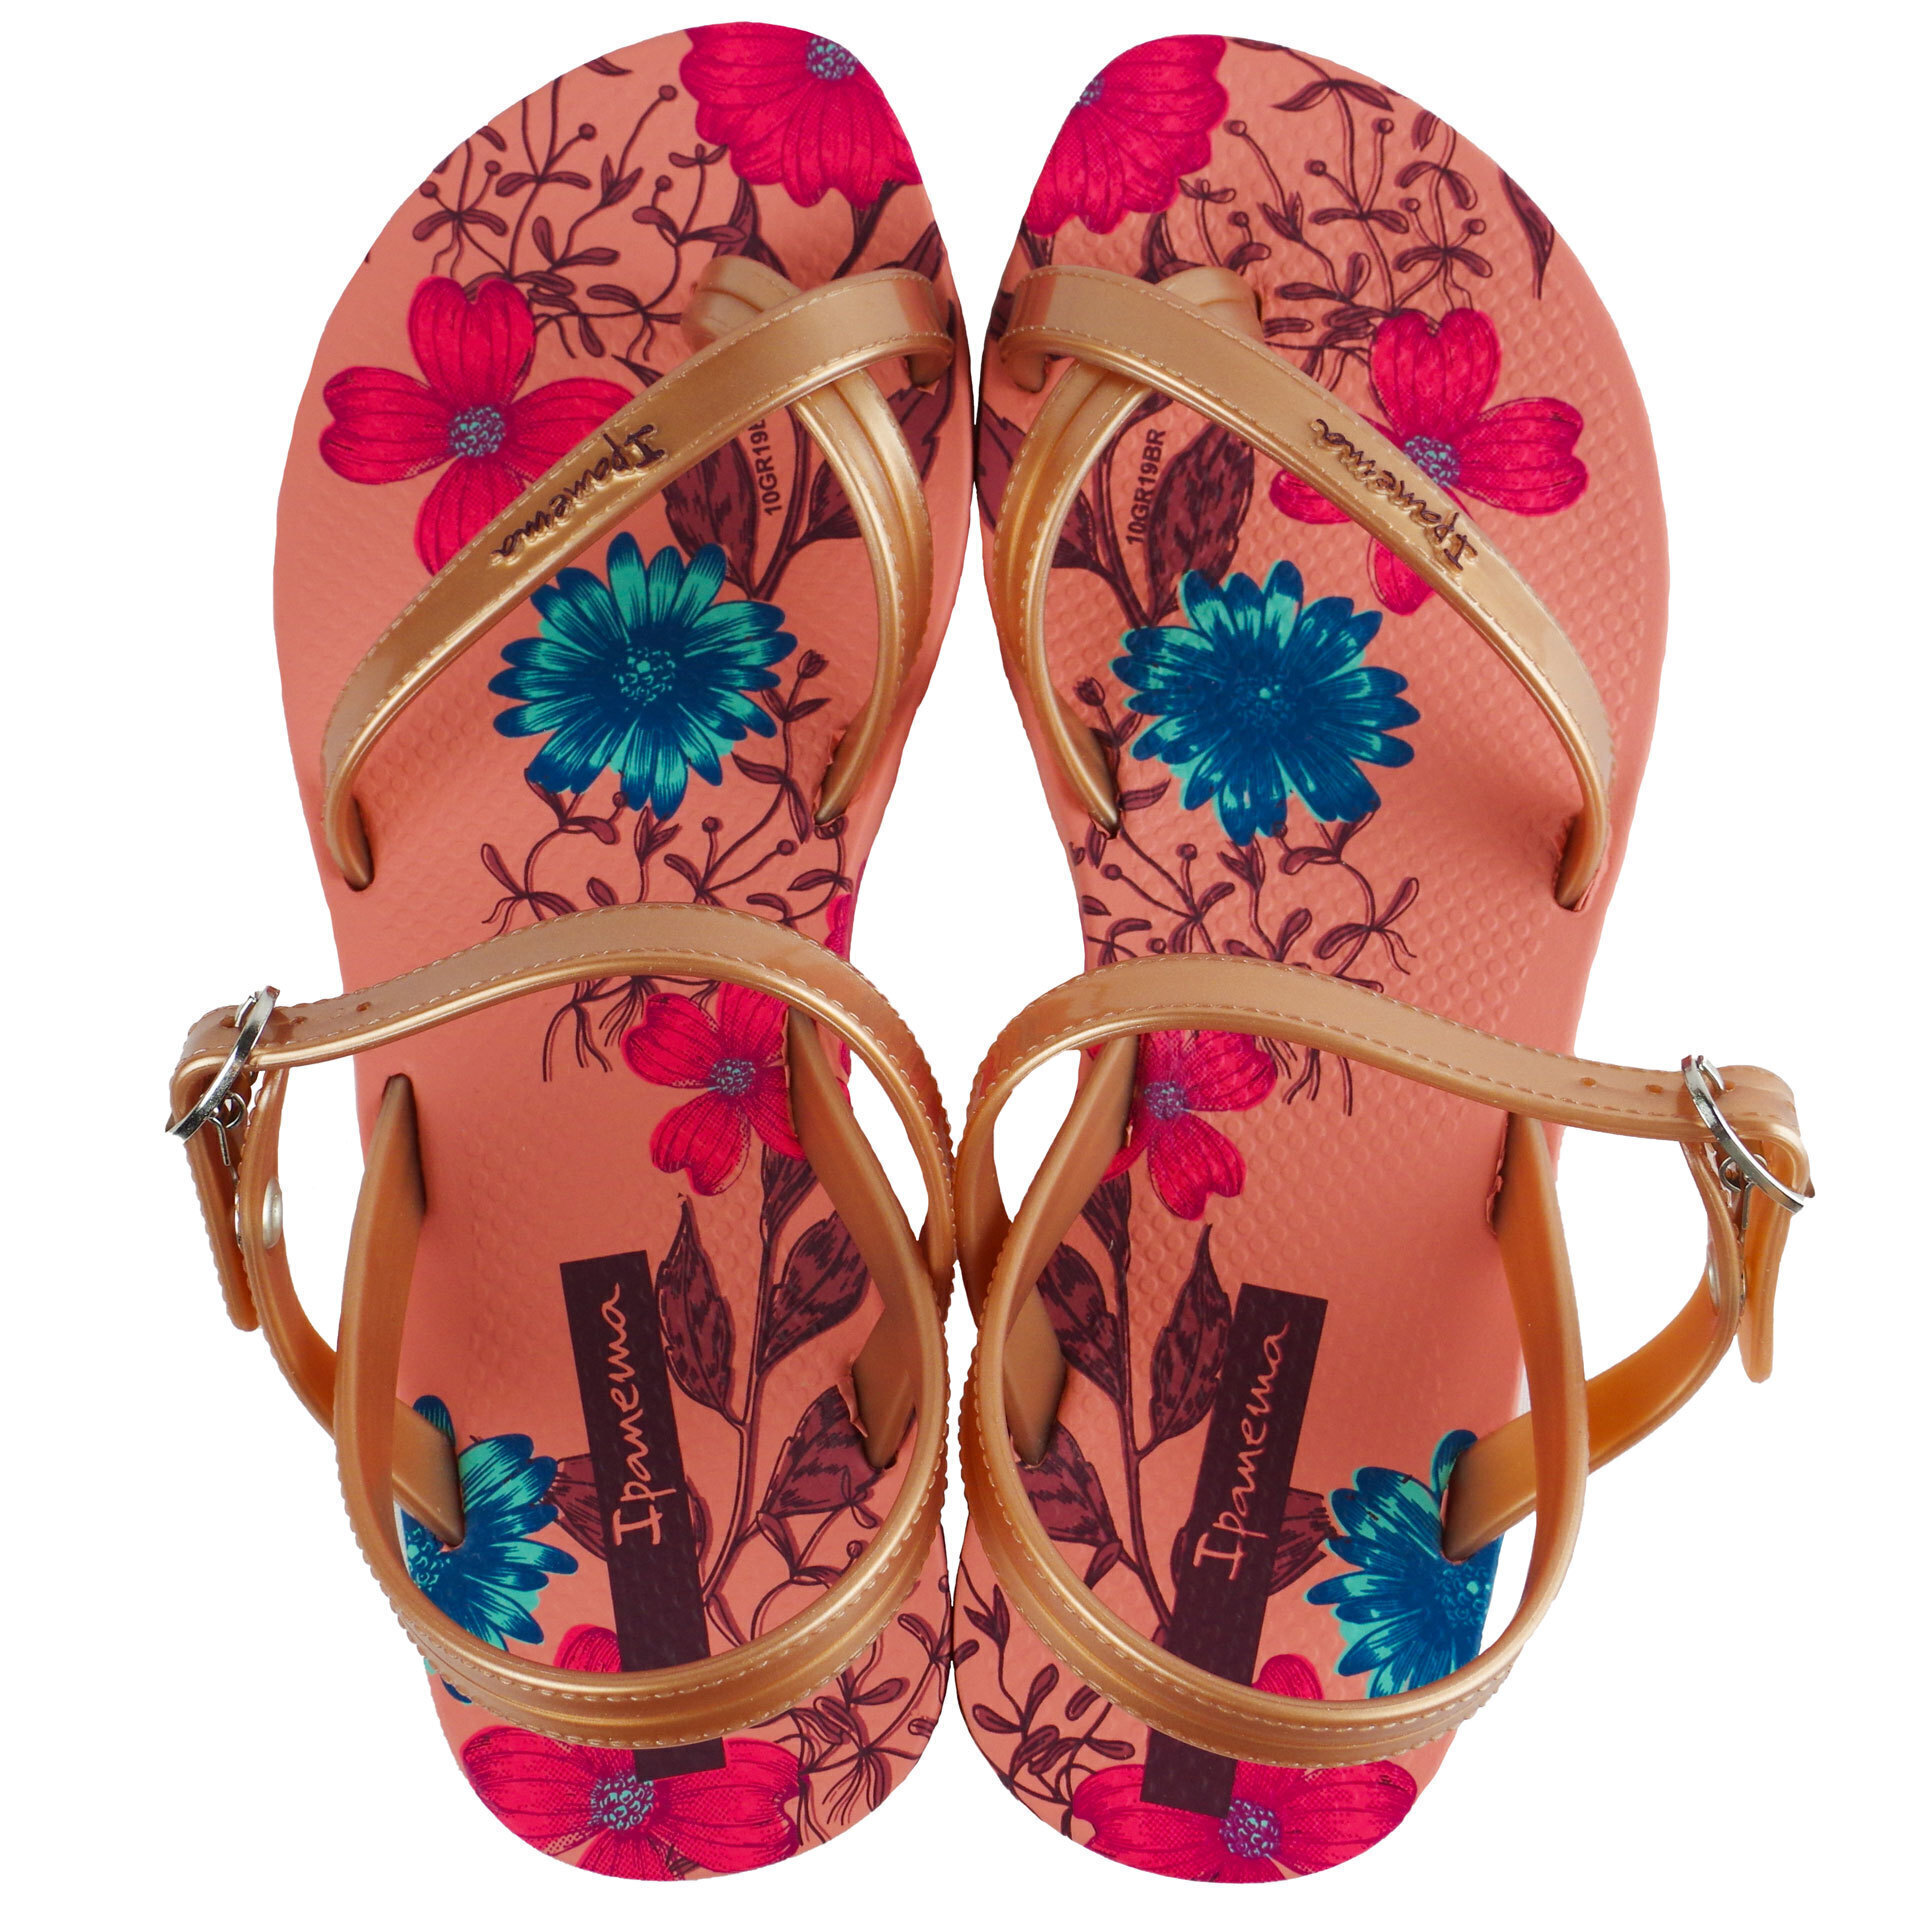 Пляжная обувь для девочки - босоножки подростковые (2012) 35-42 размеры, цвет Розовый – Sole Kids